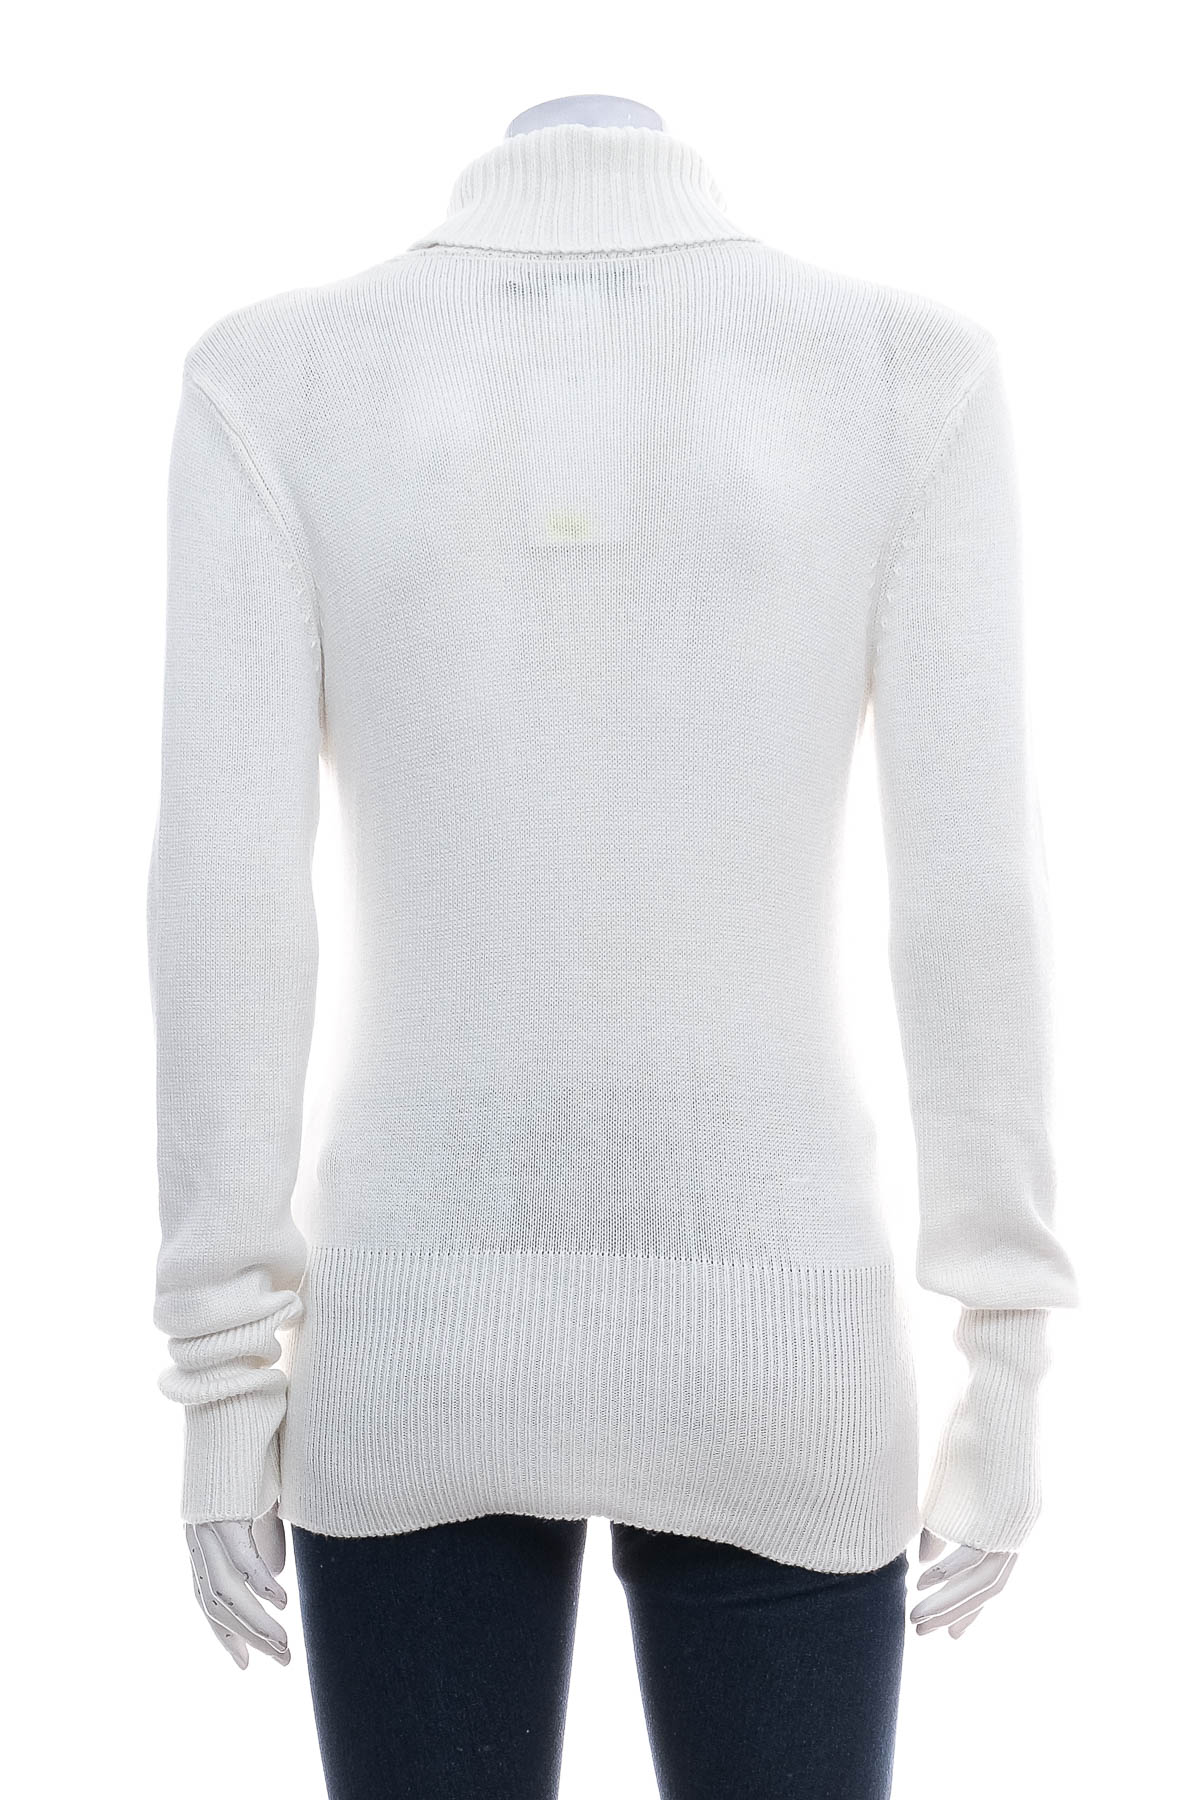 Women's sweater - Ashley Brooke - 1